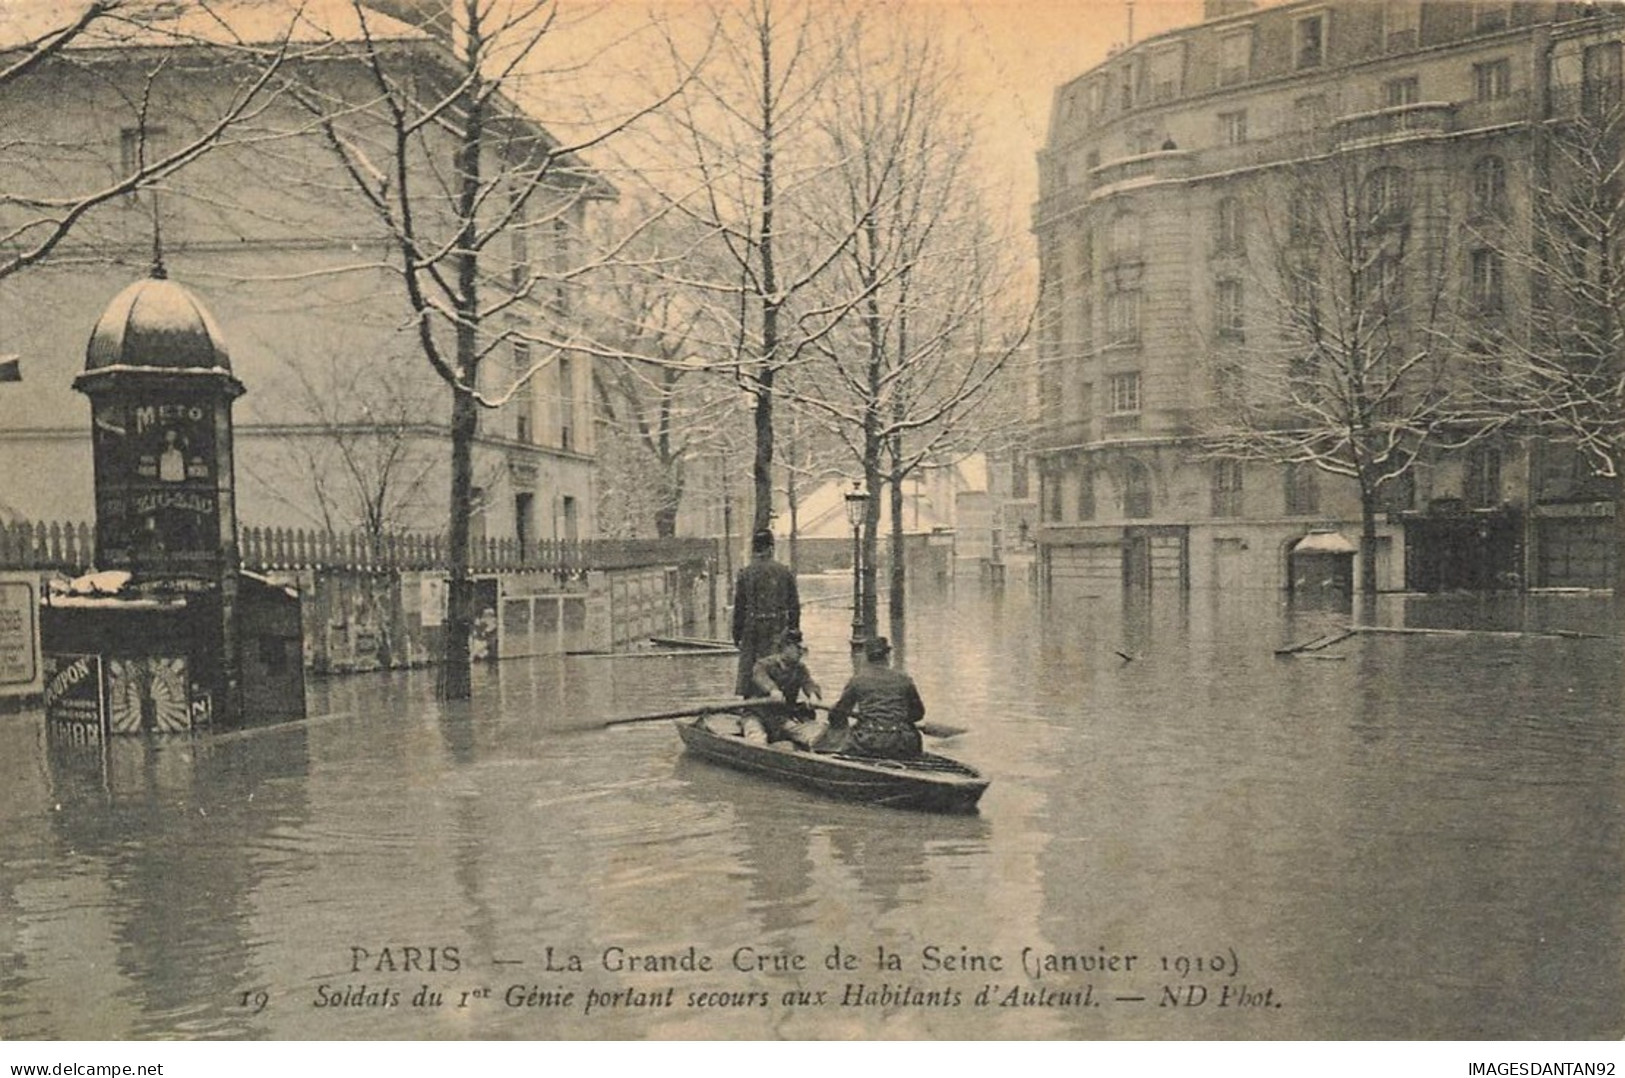 75 PARIS 16 #22933 INONDATIONS CRUE DE LA SEINE 1910 AUTEUIL SOLDATS SU 1ER GENIE PORTANT SECOURS CANOT BARQUE - Überschwemmung 1910